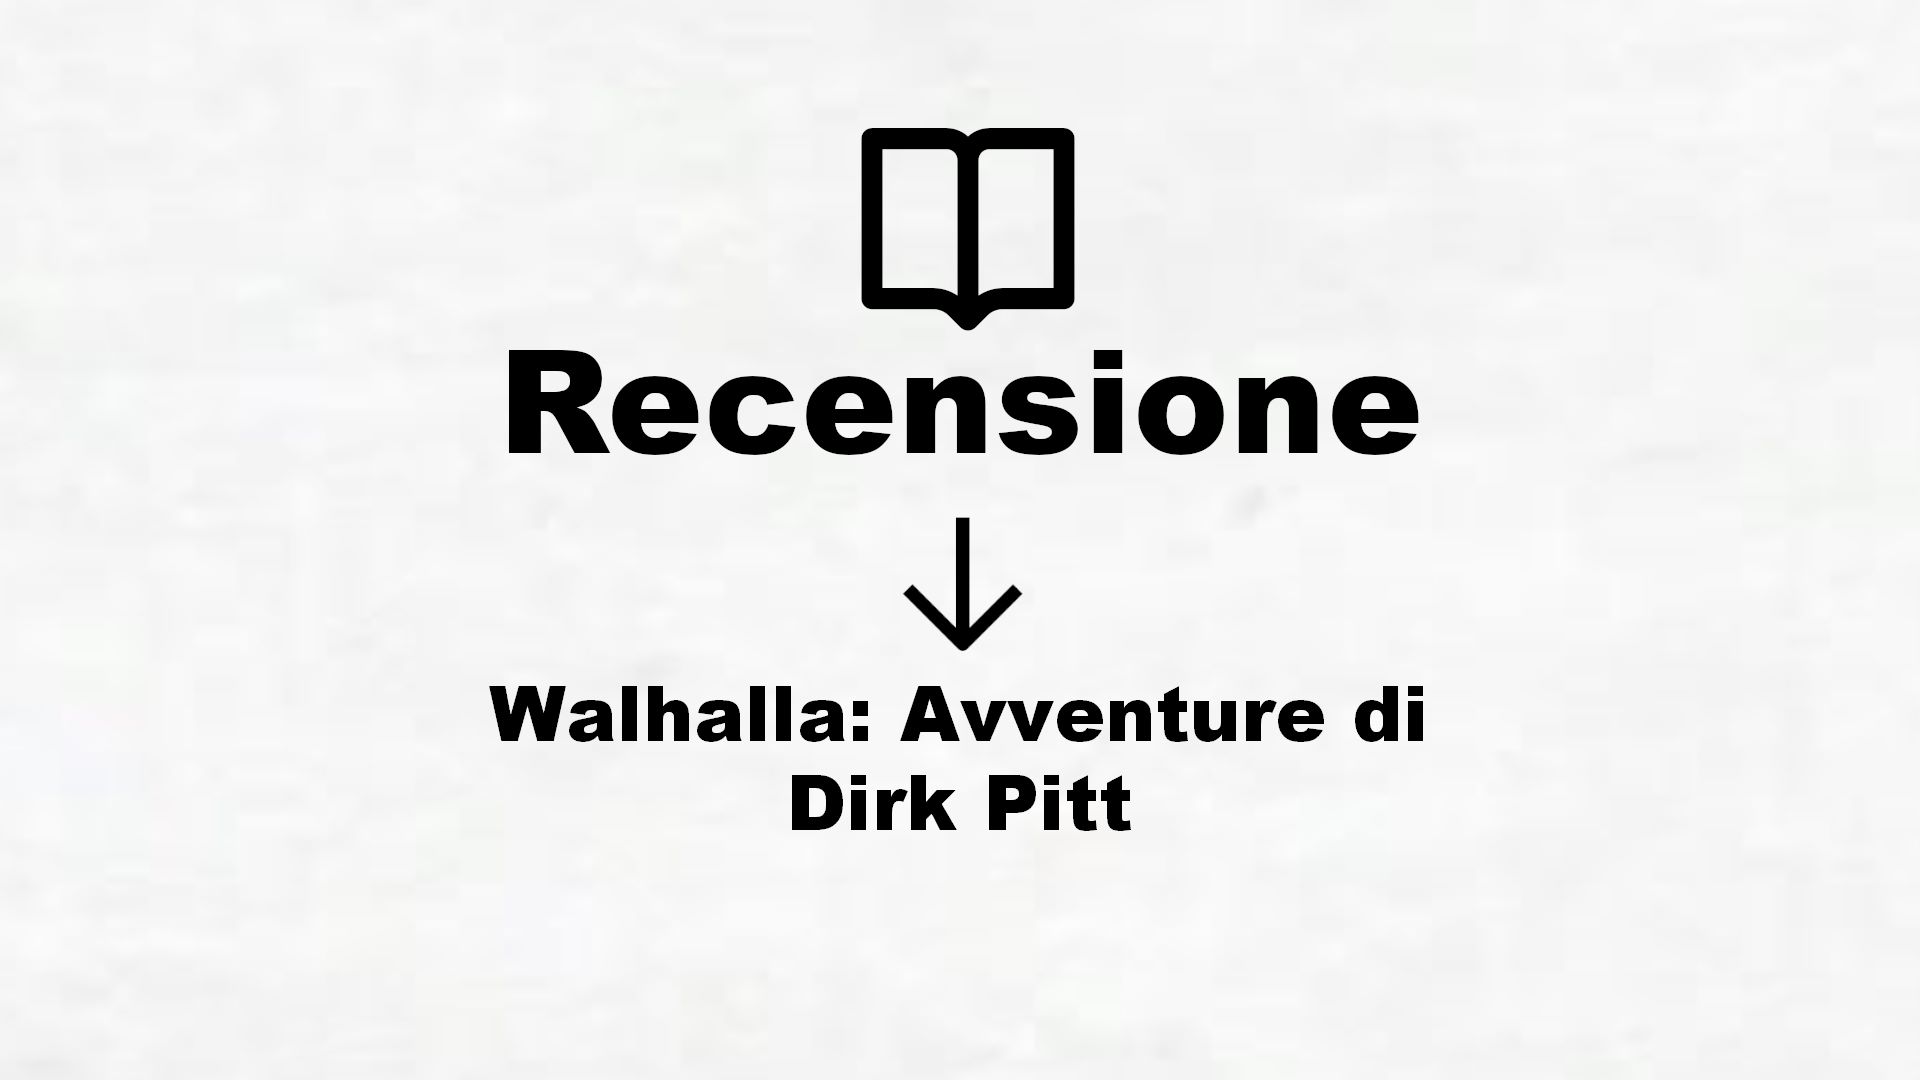 Walhalla: Avventure di Dirk Pitt – Recensione Libro